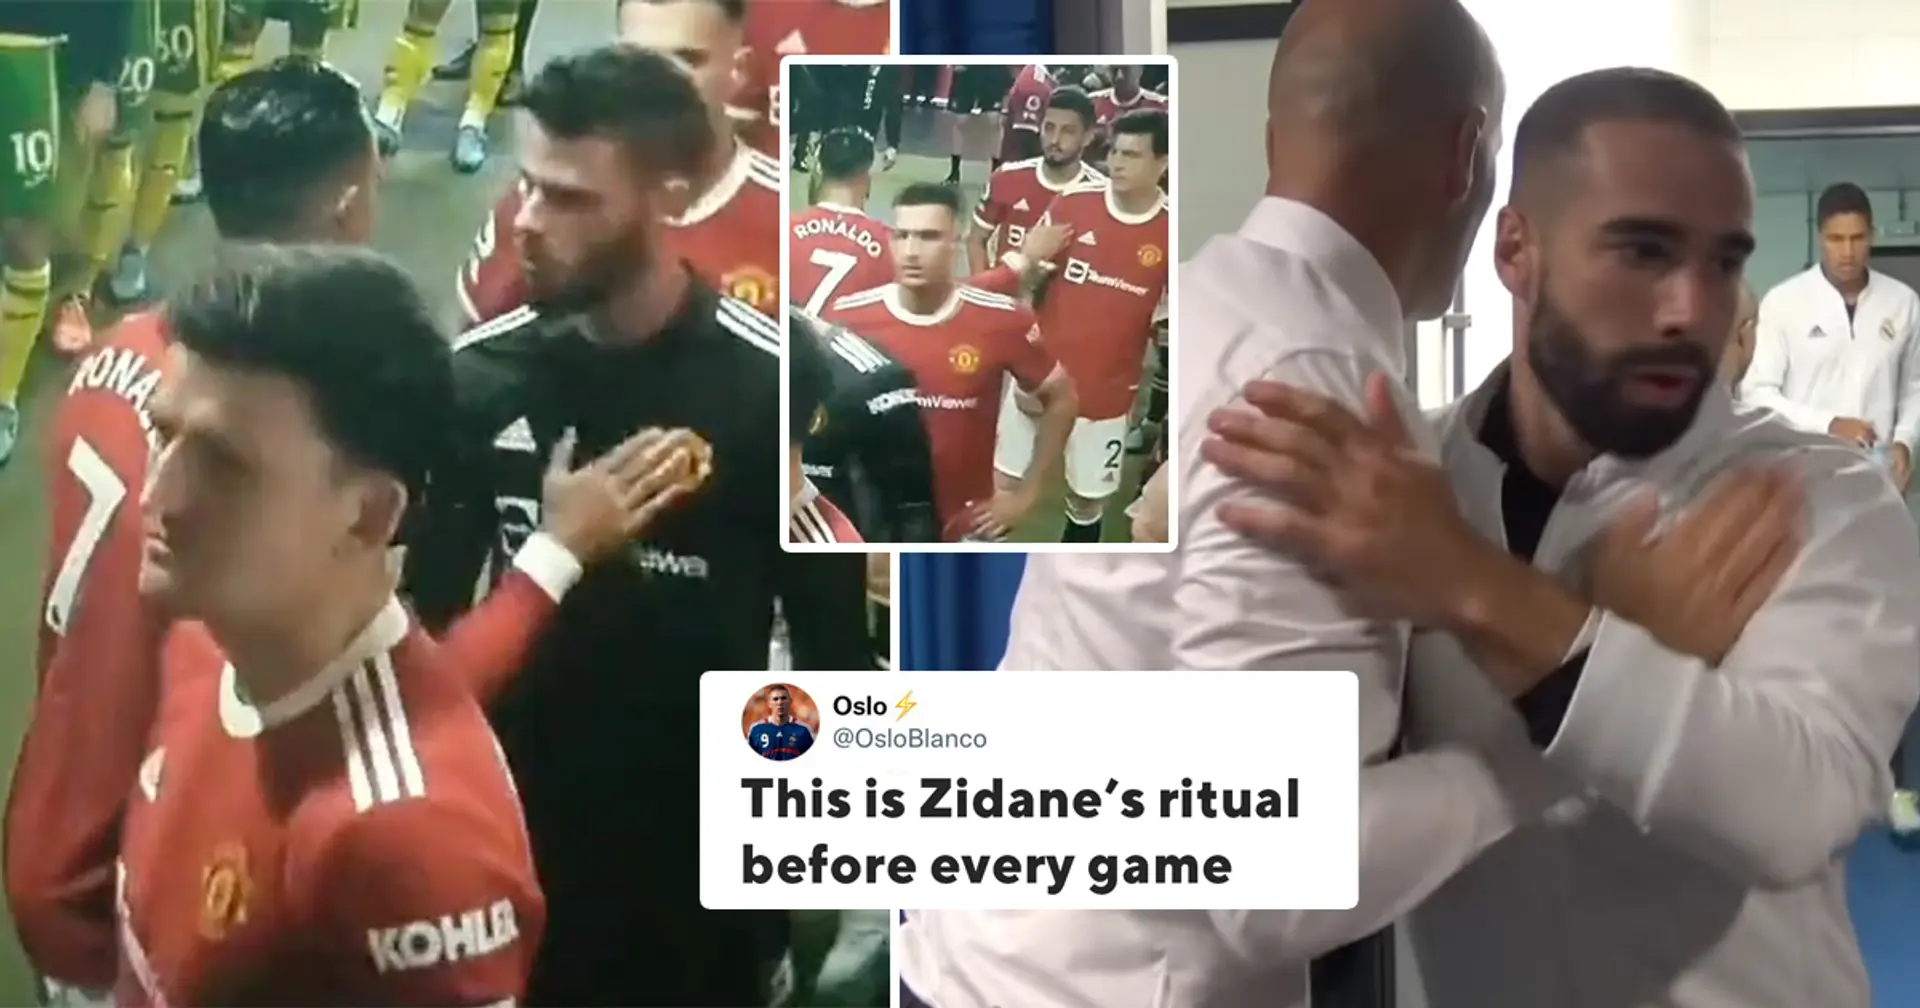 Un fan repère le "rituel de Zidane" dans la routine d'avant-match de Ronaldo à Man United